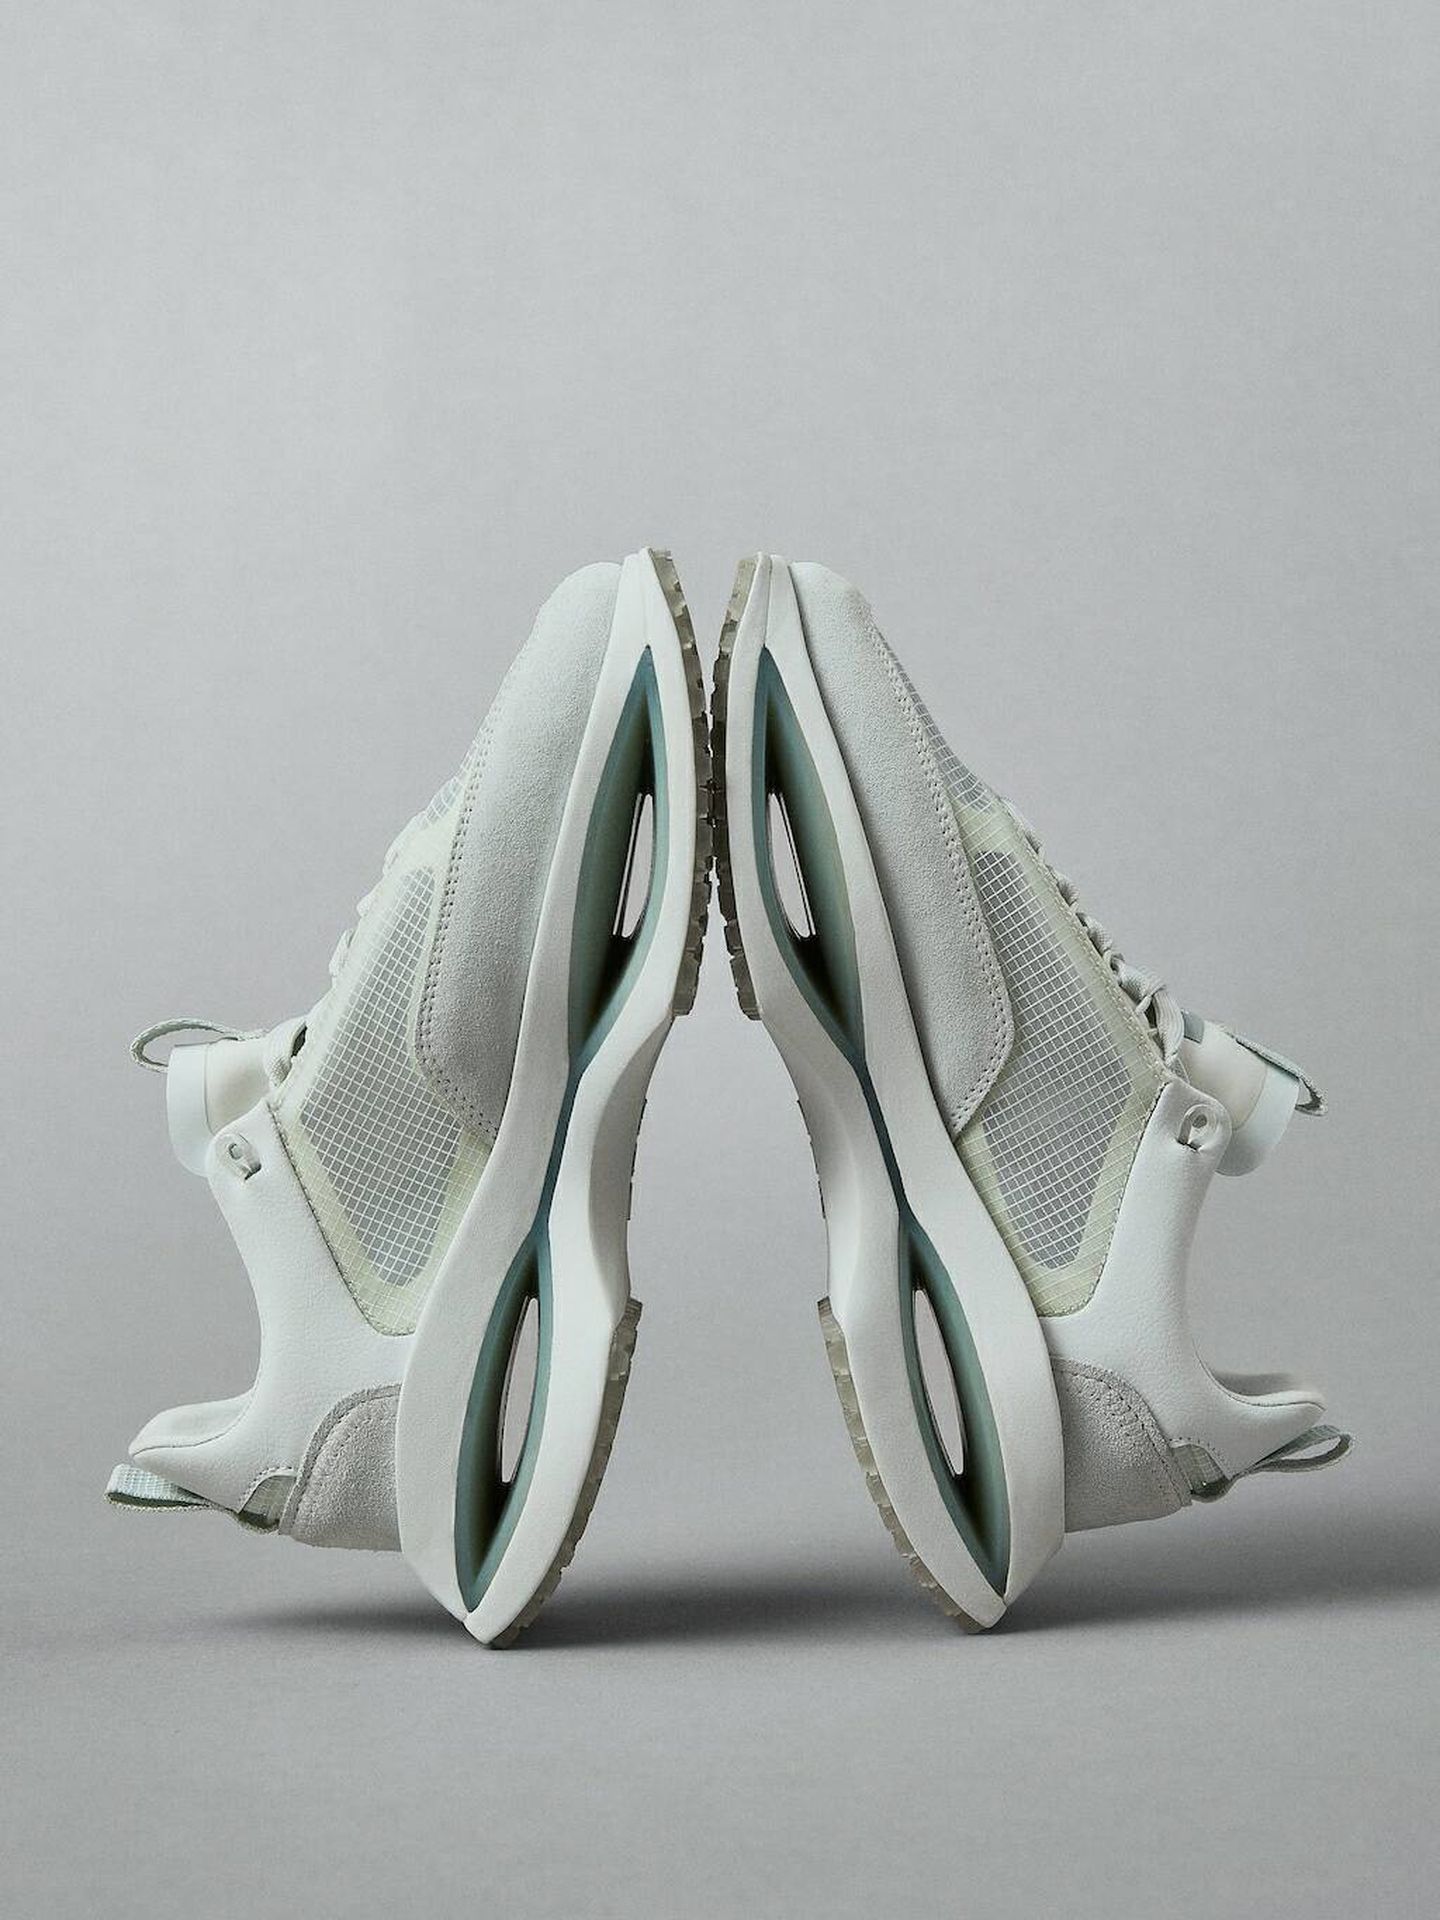 Zapatillas deportivas futuristas. (Mango/Cortesía)